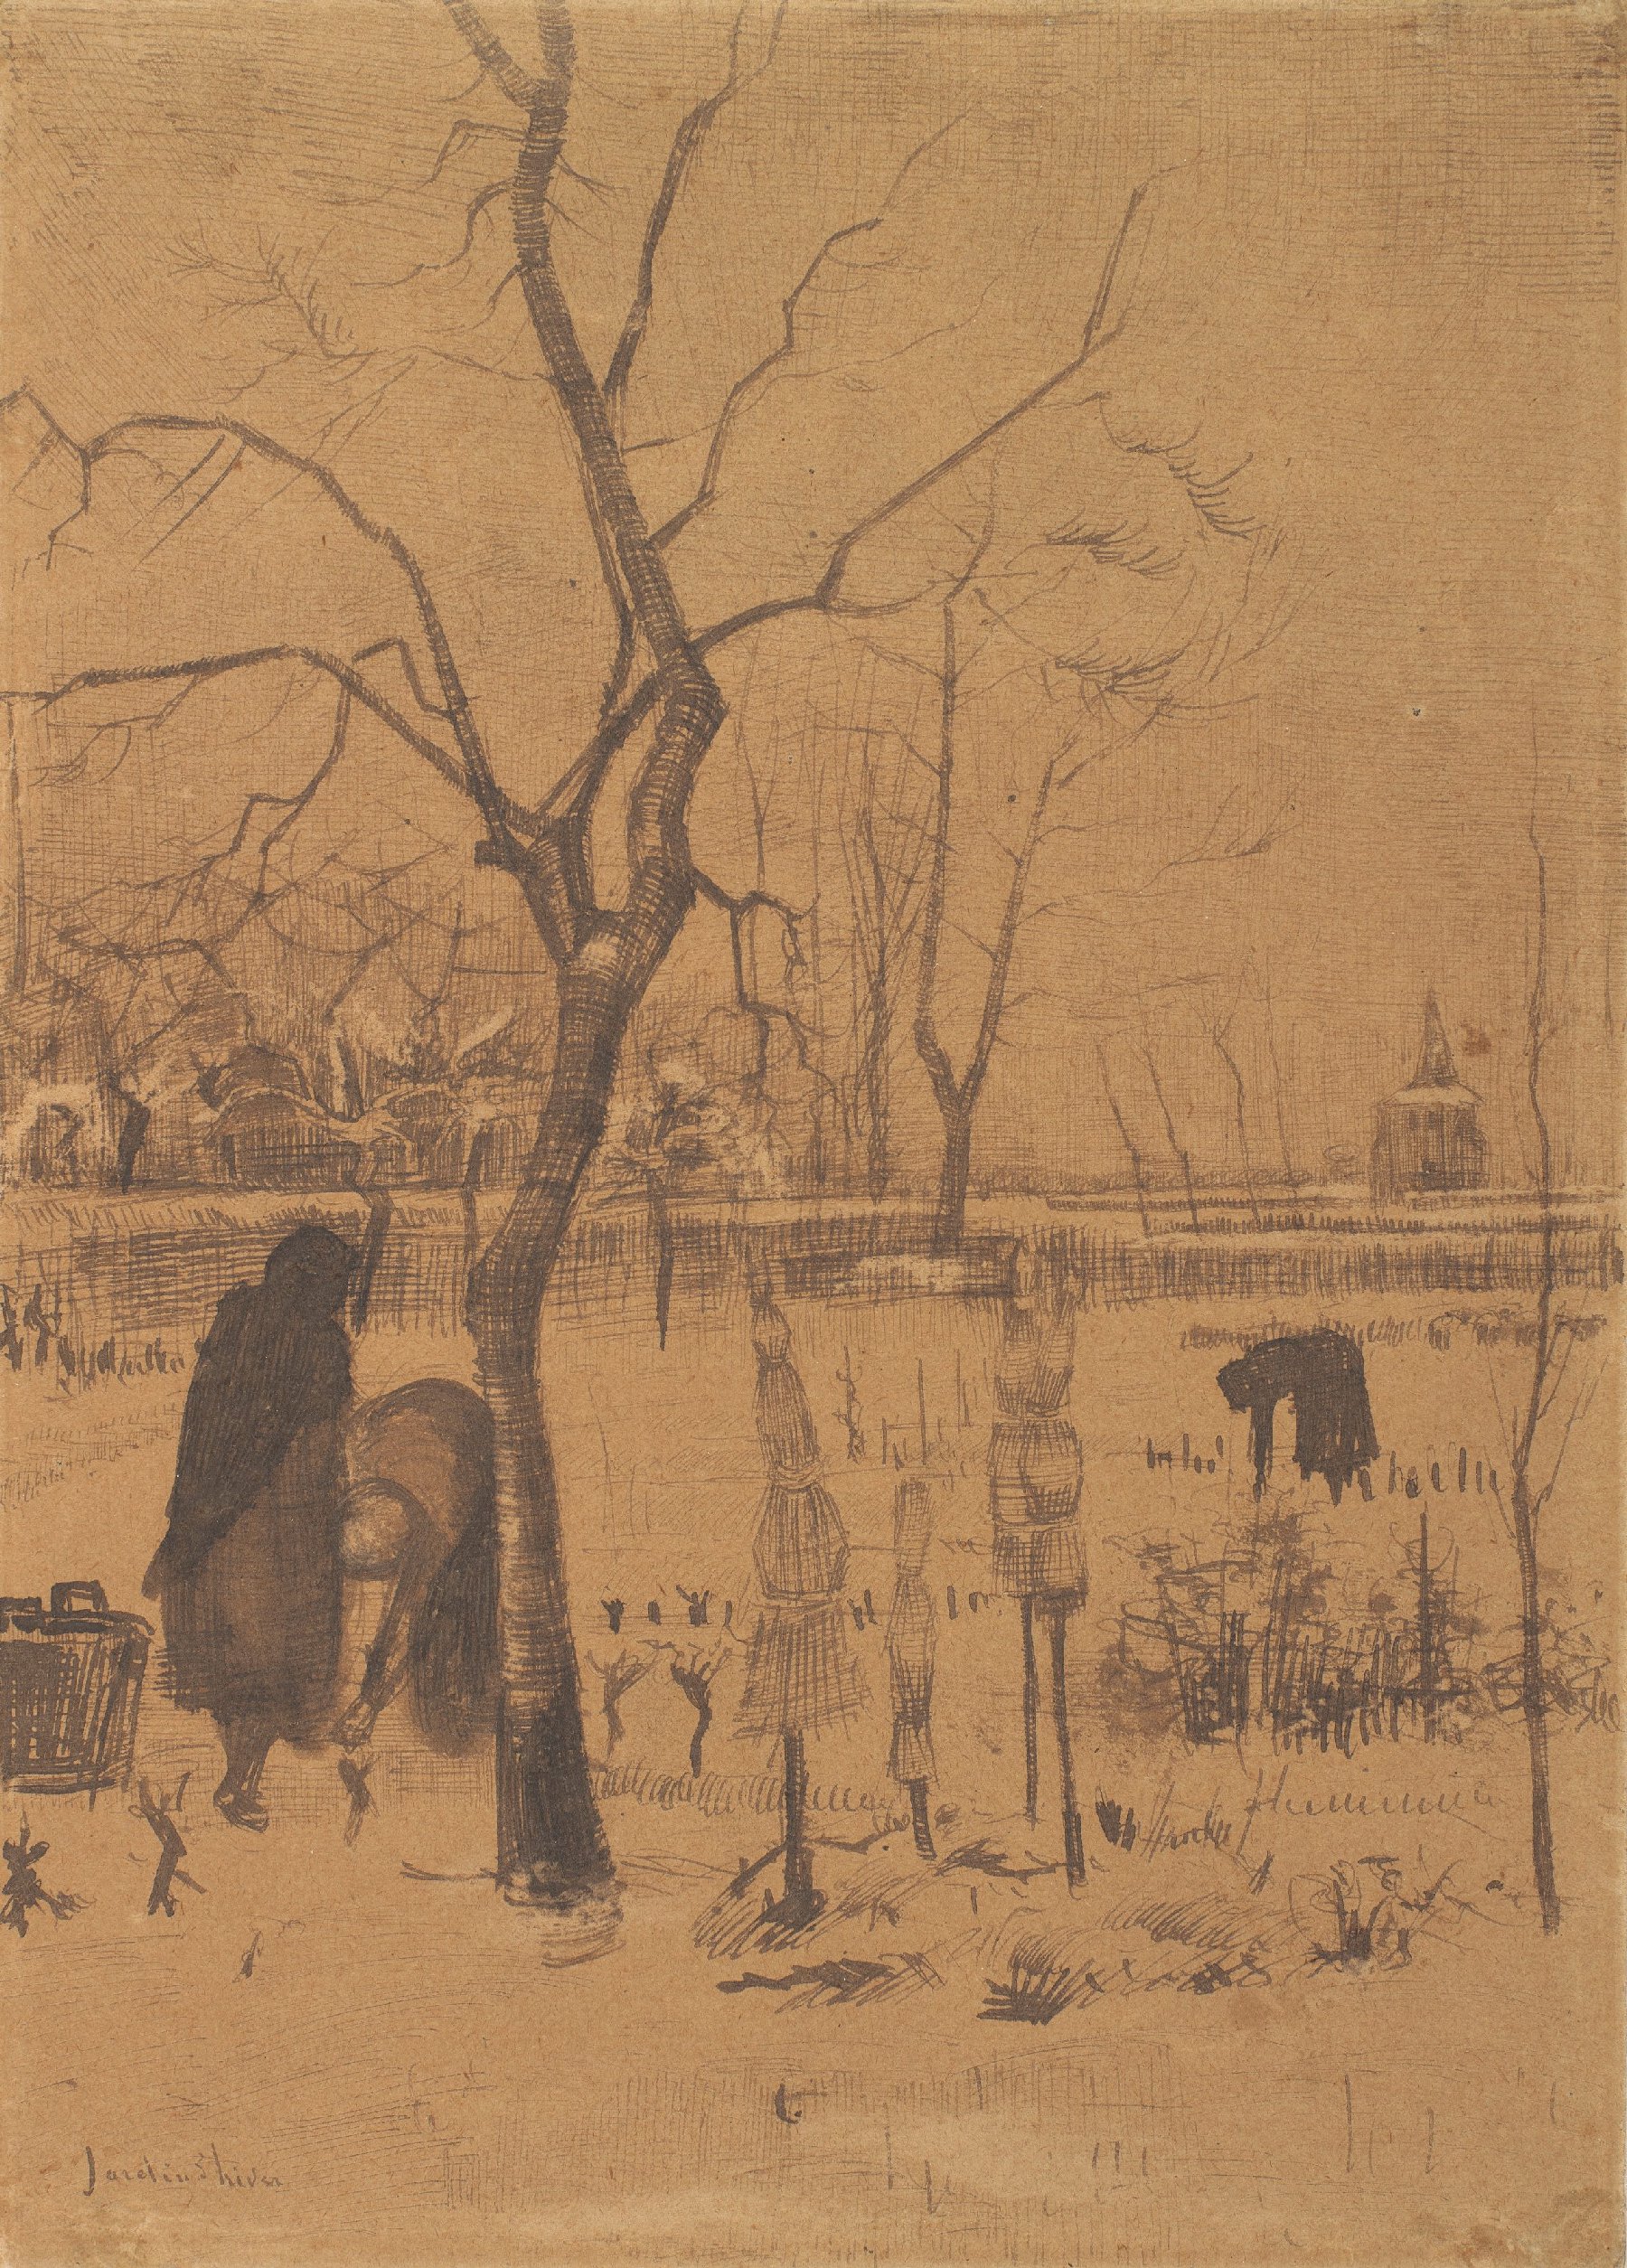 Wintertuin Vincent van Gogh (1853 - 1890), Nuenen, december 1883